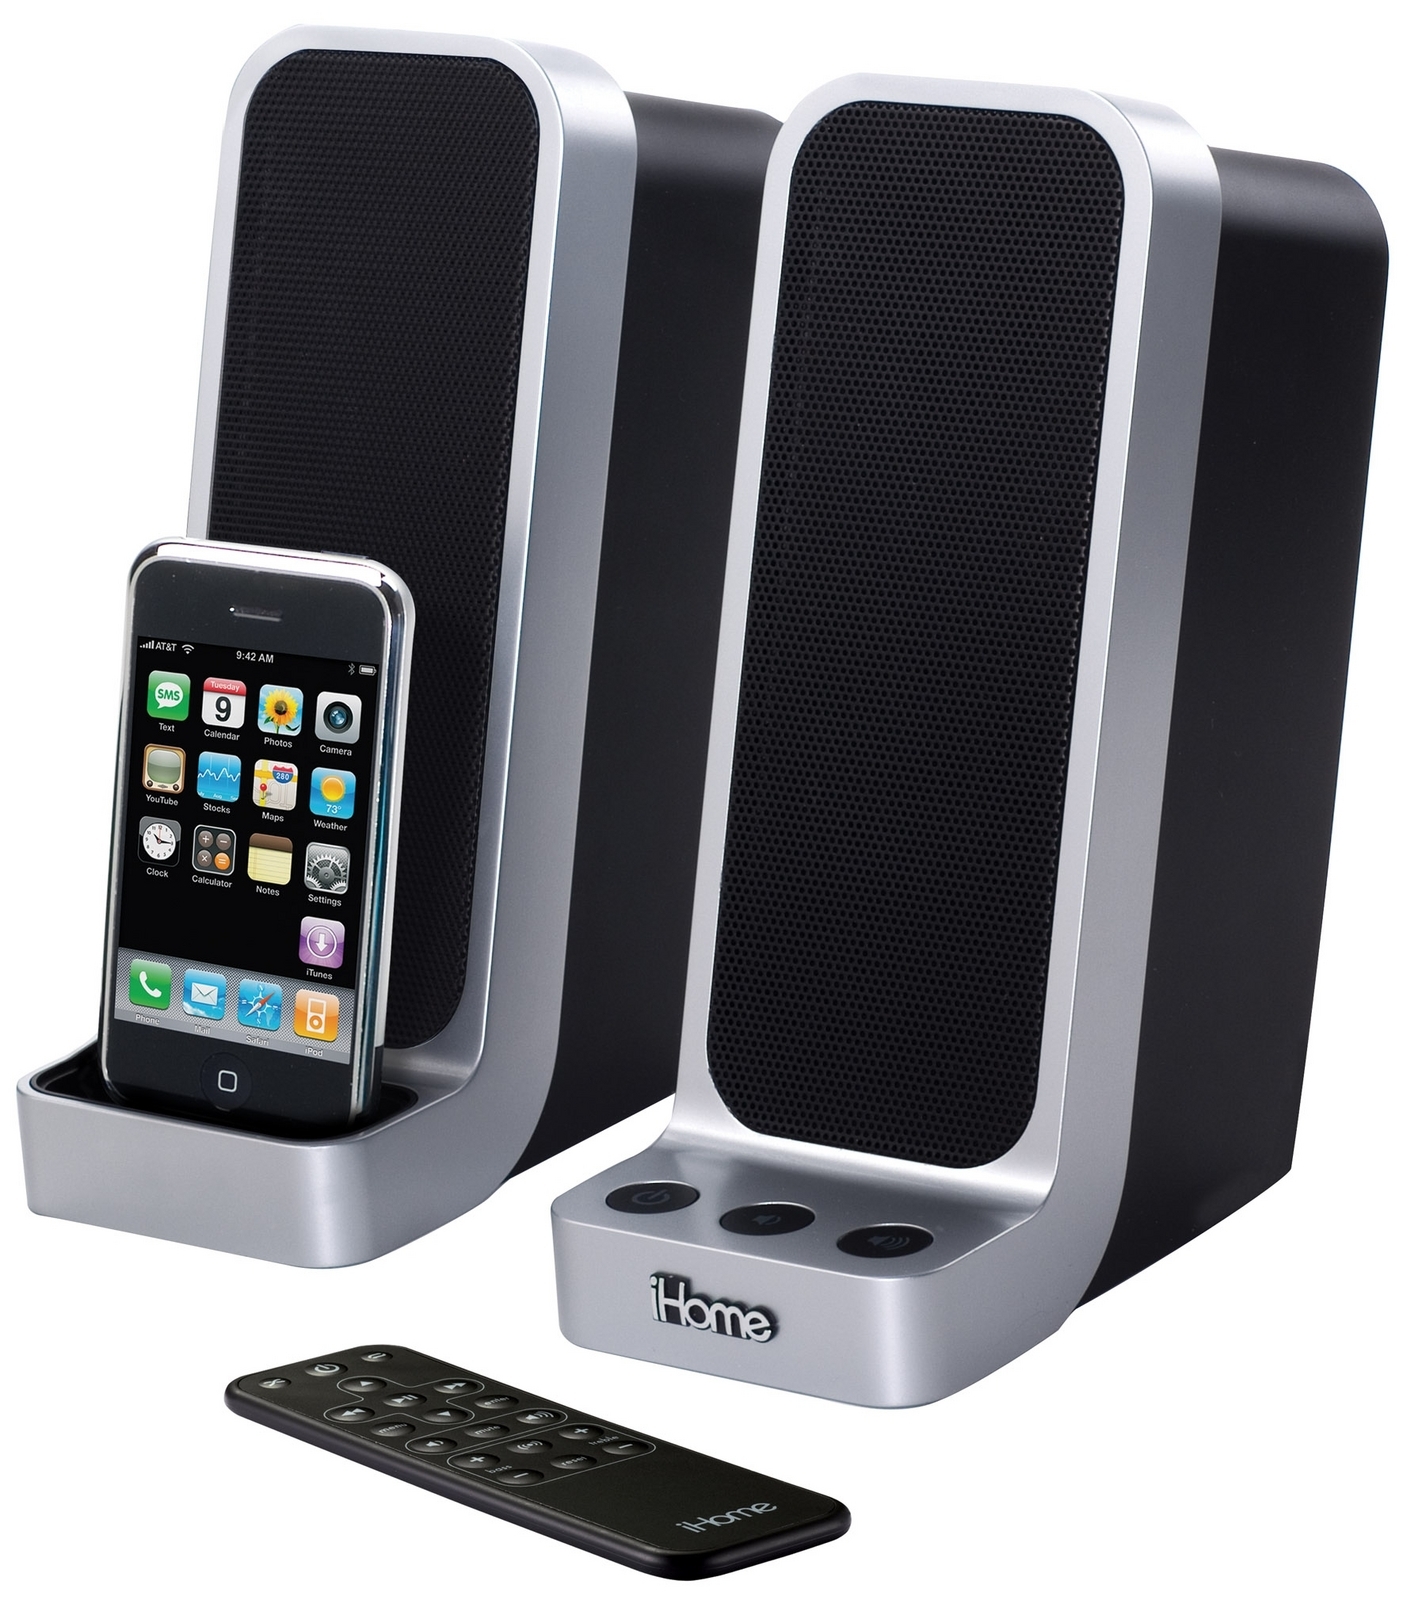 iHome iP71 Computer Speakers - спийкъри за Mac с док станция за iPhone 2G, iPhone 3G/3GS, iPhone 4/4S и iPod (модели до 2012 година)